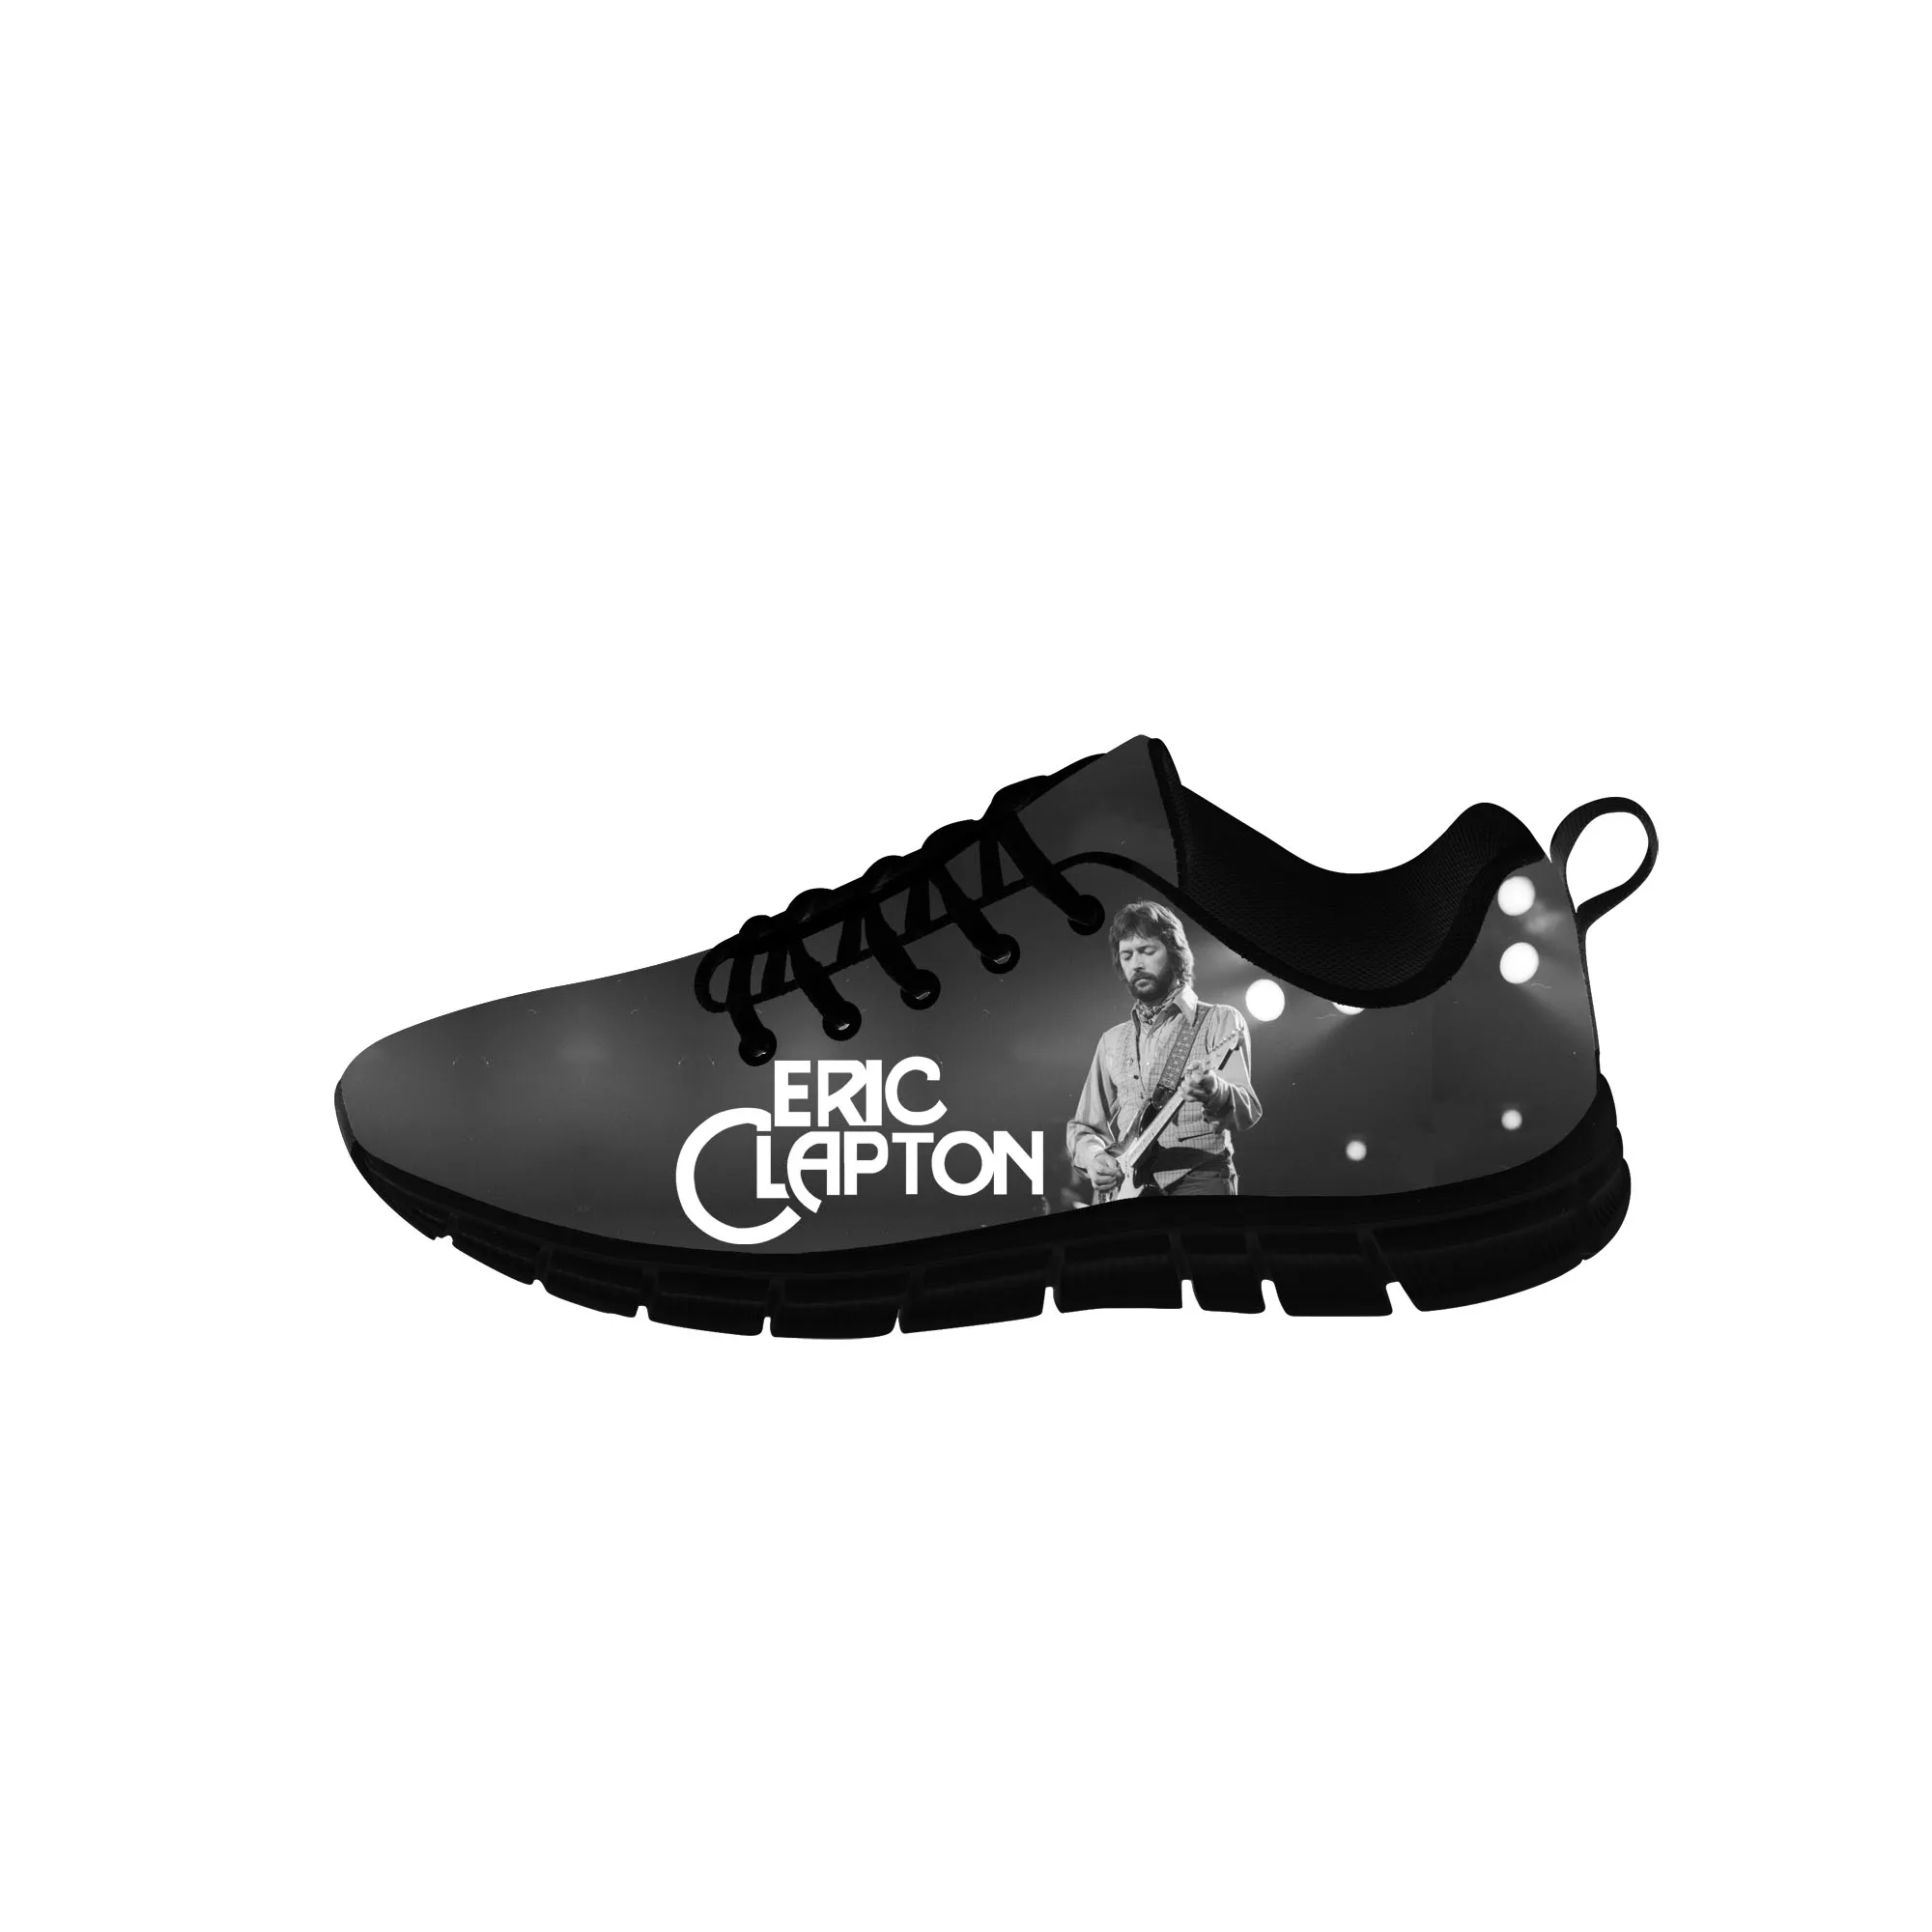 

Кроссовки унисекс Эрик Клэптон, повседневная Тканевая обувь для подростков, холщовые беговые туфли, дышащая легкая обувь с 3D принтом, черные